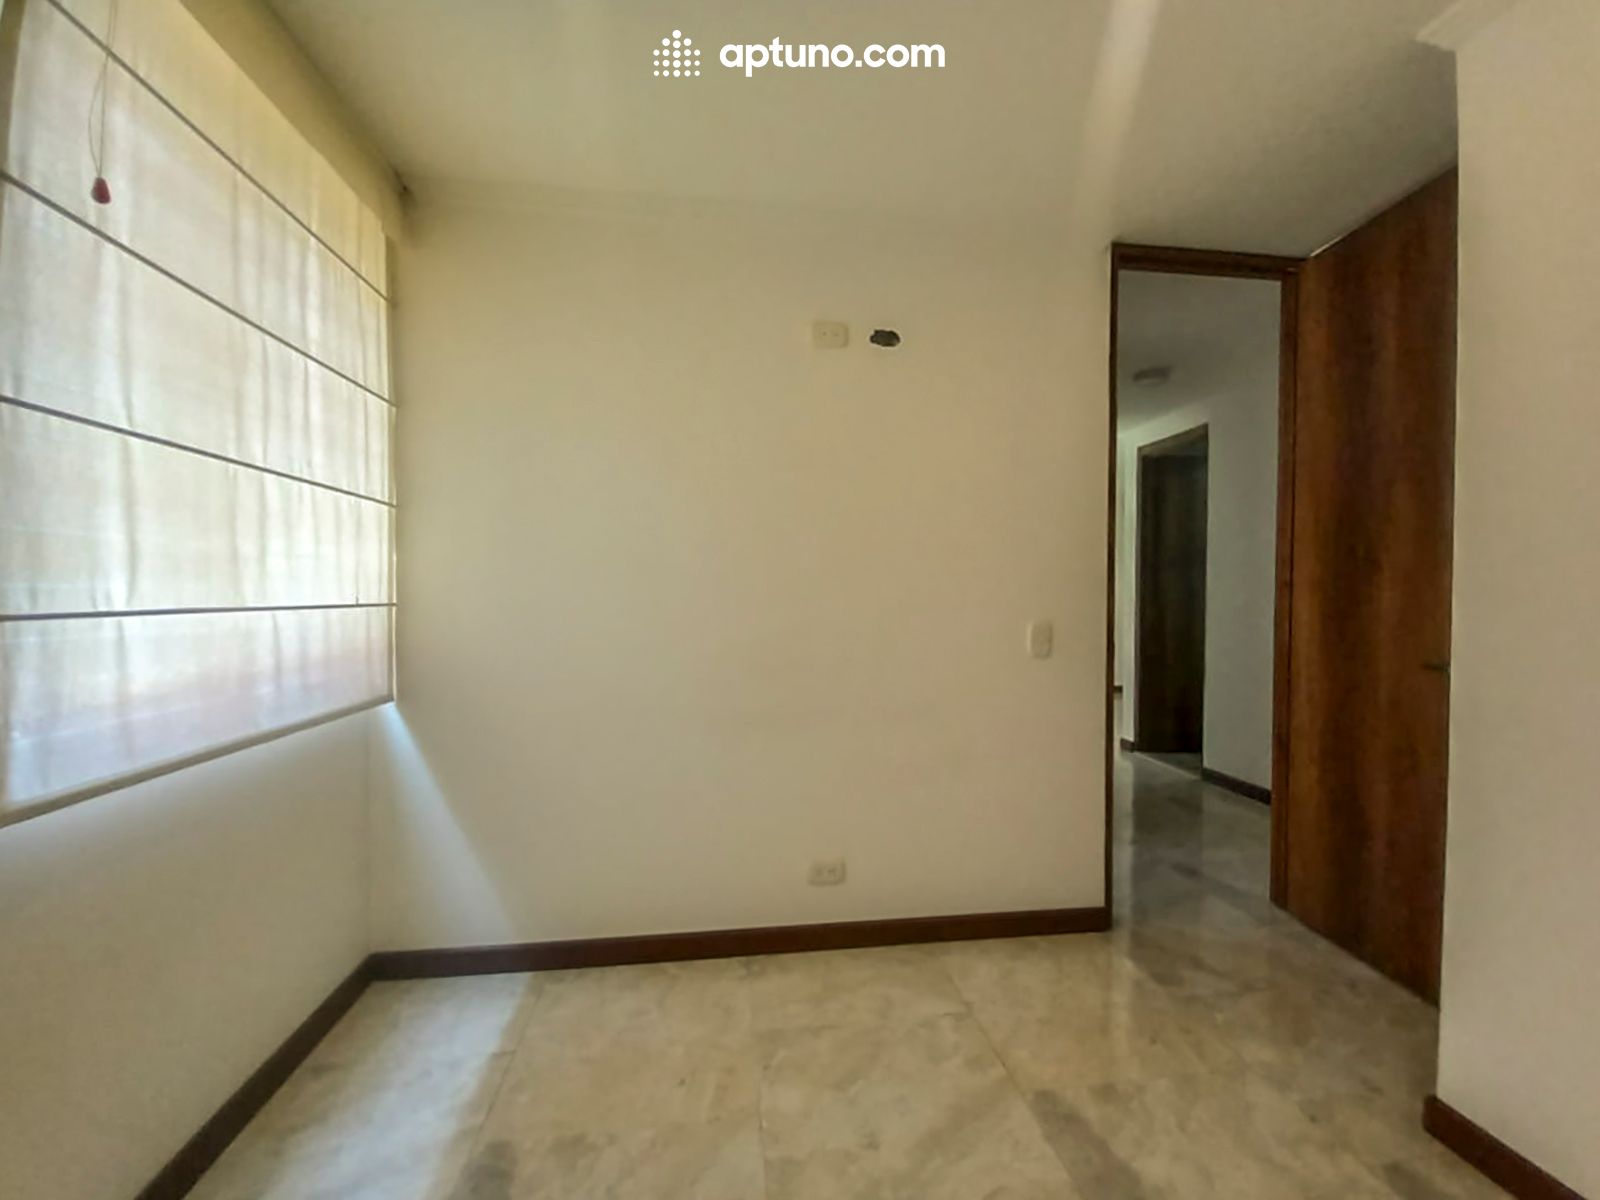 Apartamento en arriendo Madrid 63 m² - $ 1.000.000,00